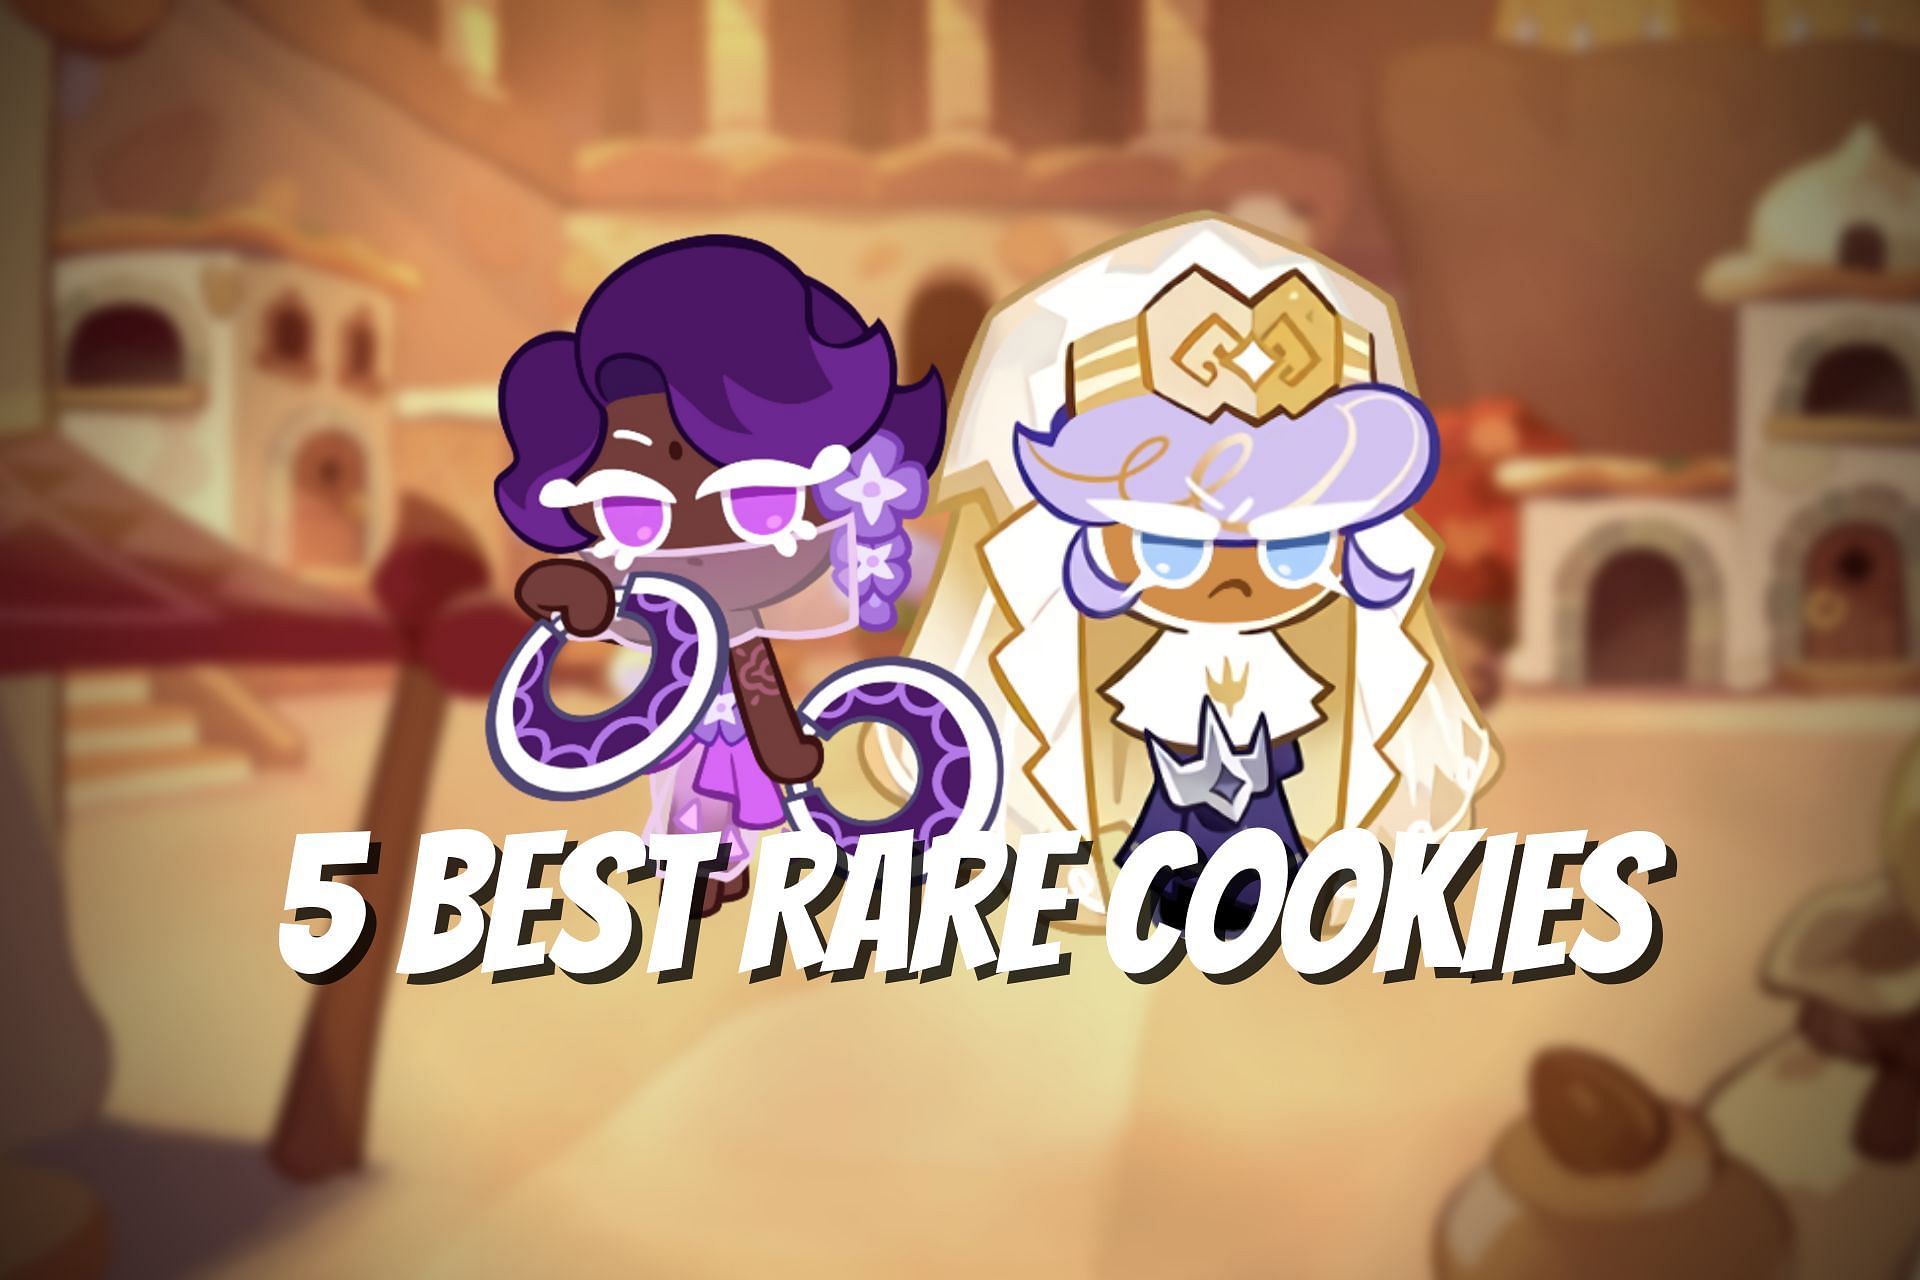 5 best rare cookies from Cookie Run: Kingdom (Image via Sportskeeda)